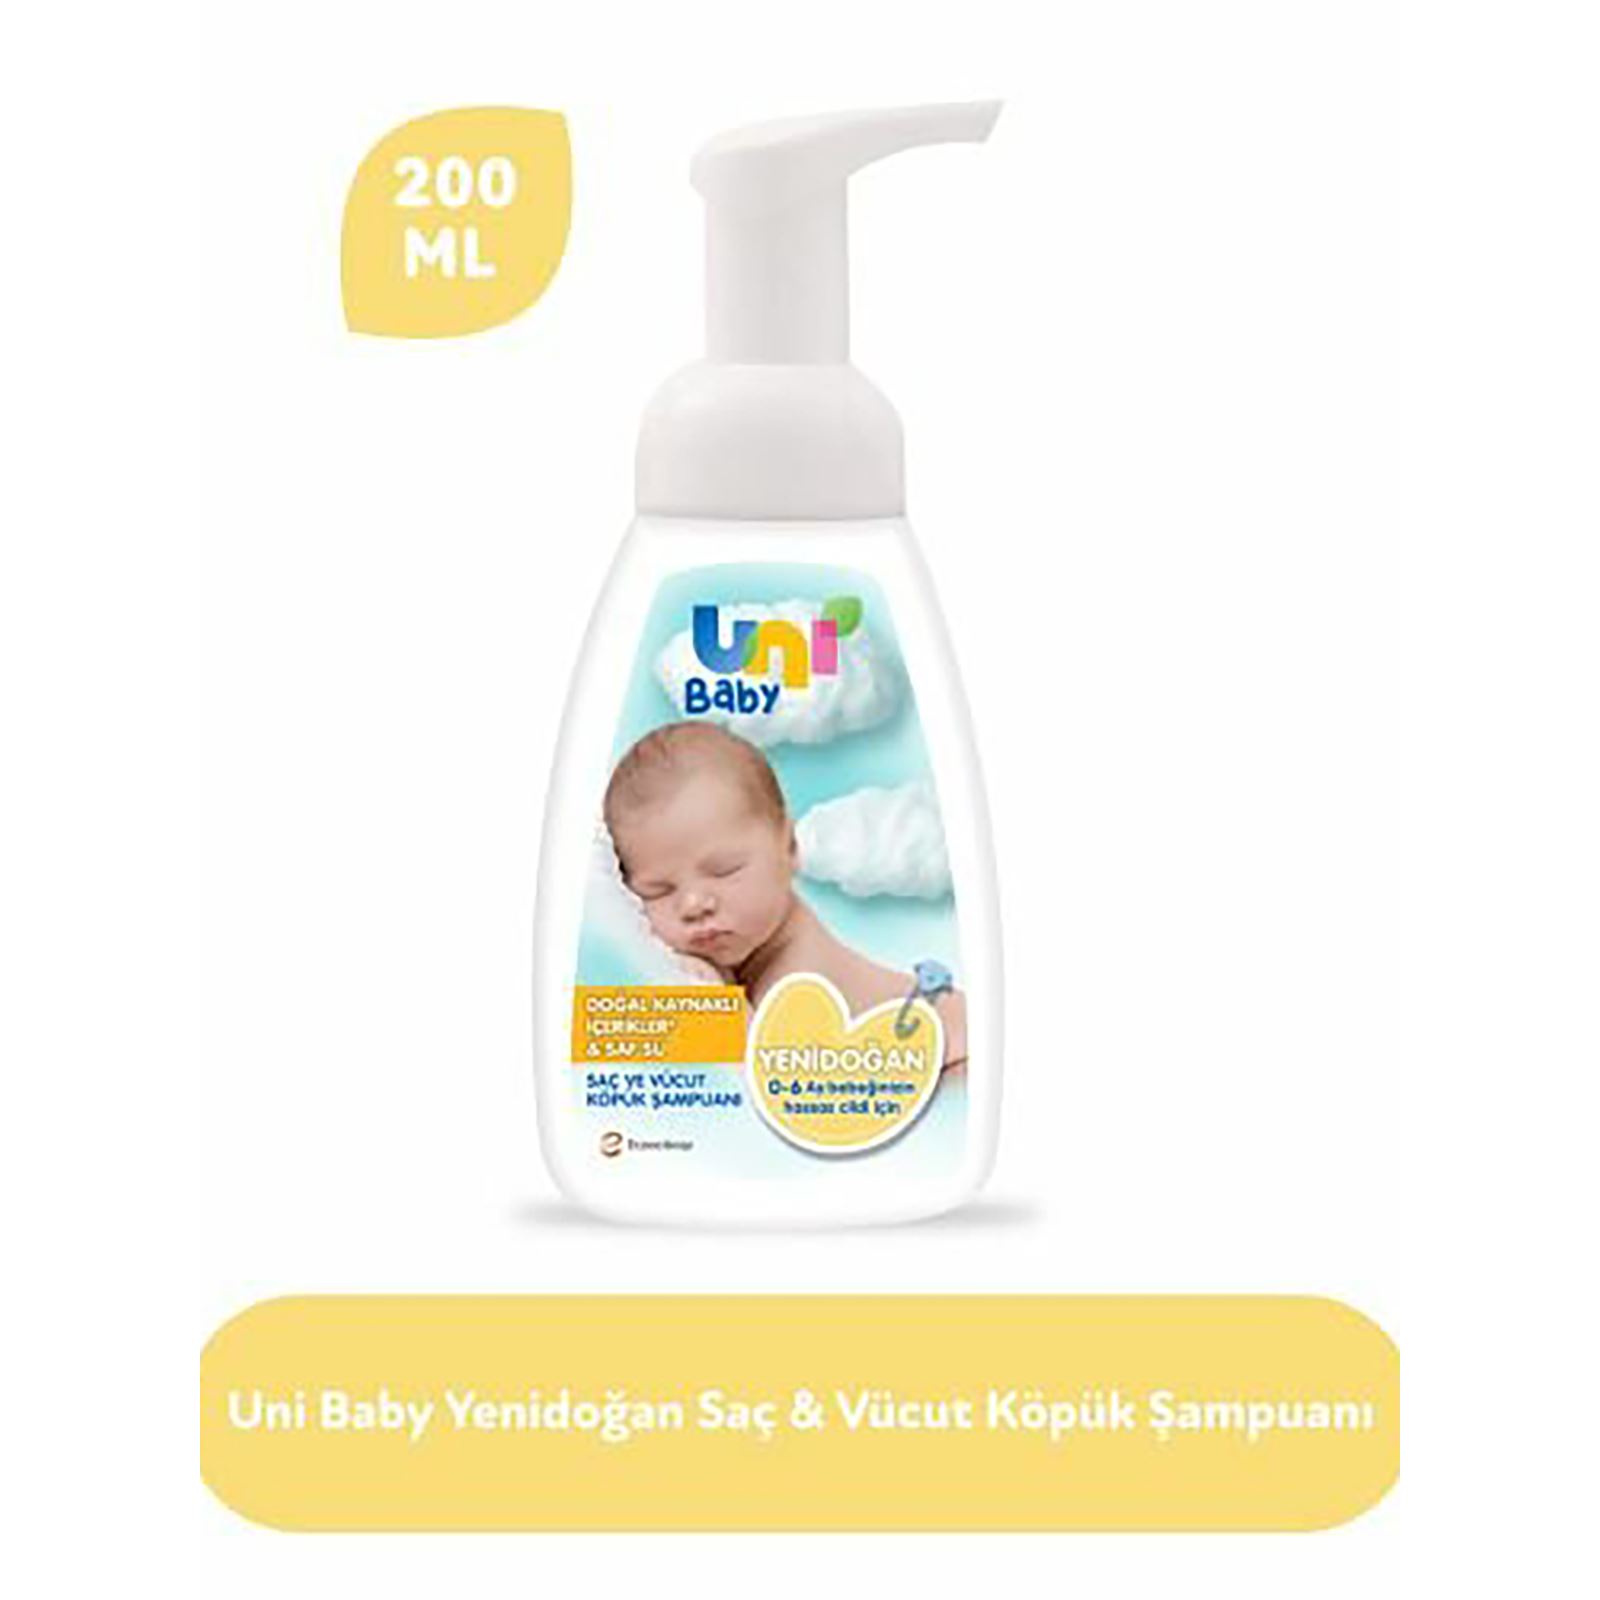  Uni Baby Yenidoğan Köpük Şampuan 200 ml 0-6 AY